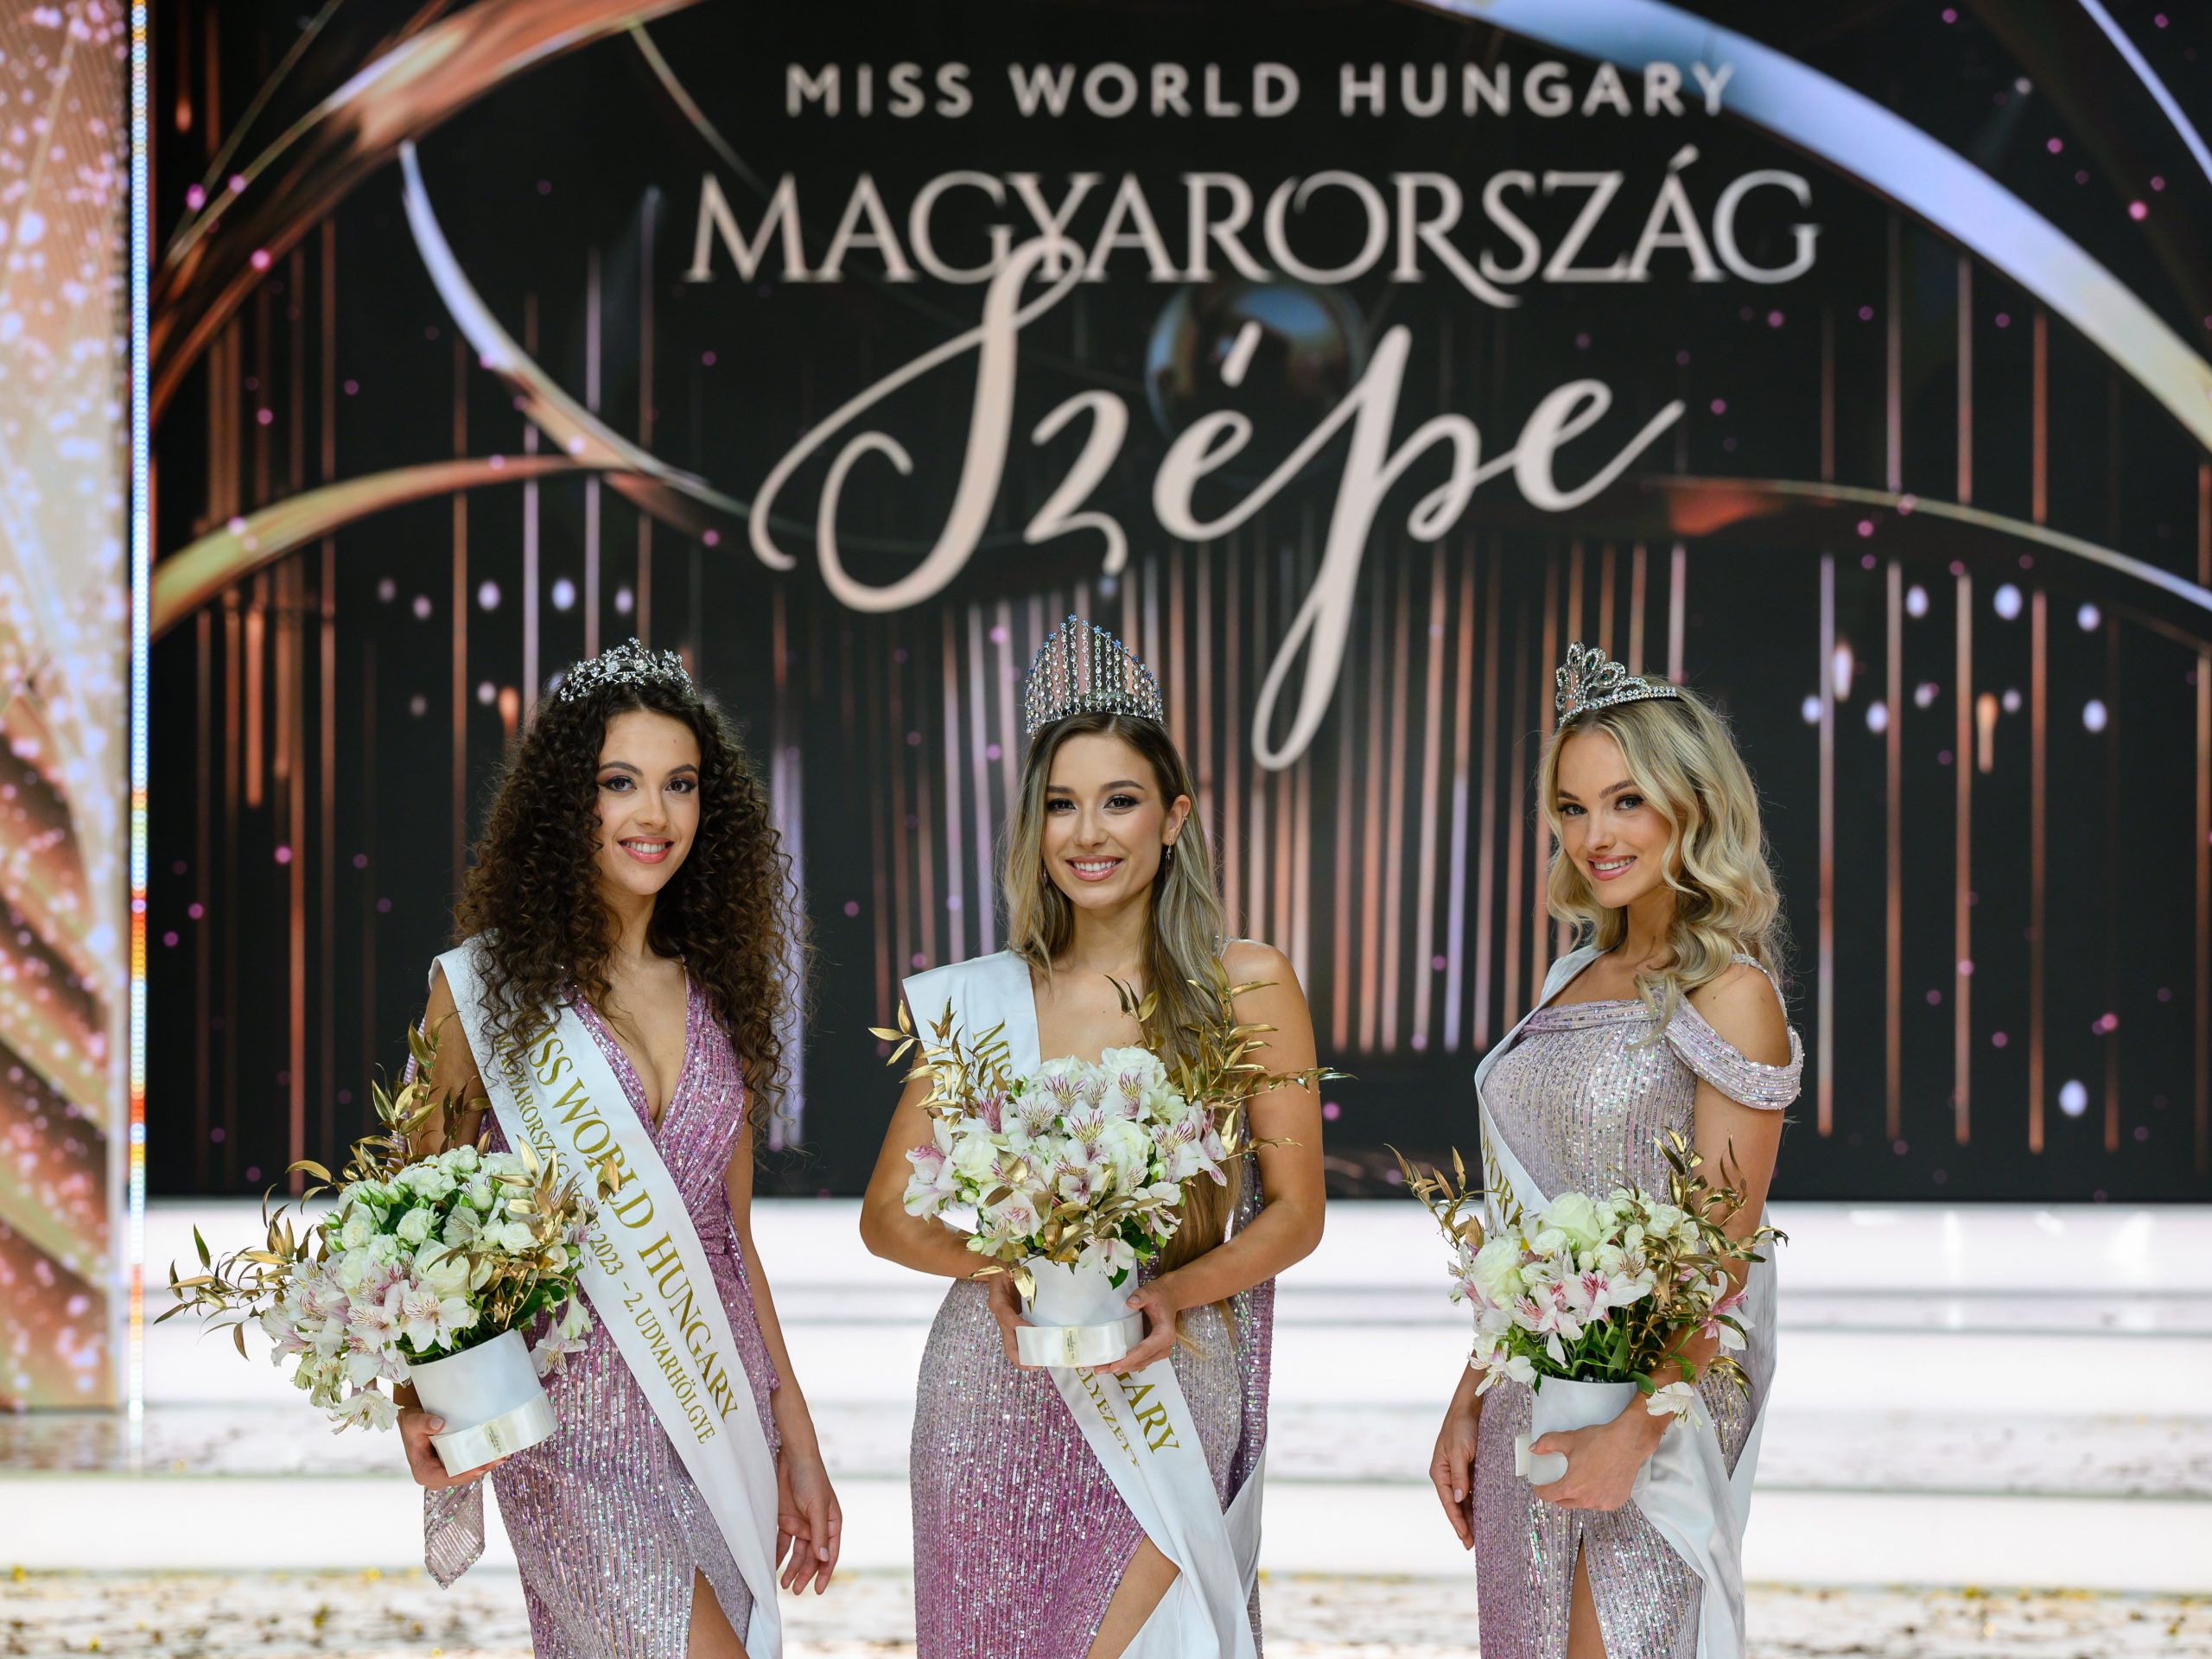 Miss World Hungary-t a látványos show során választották meg